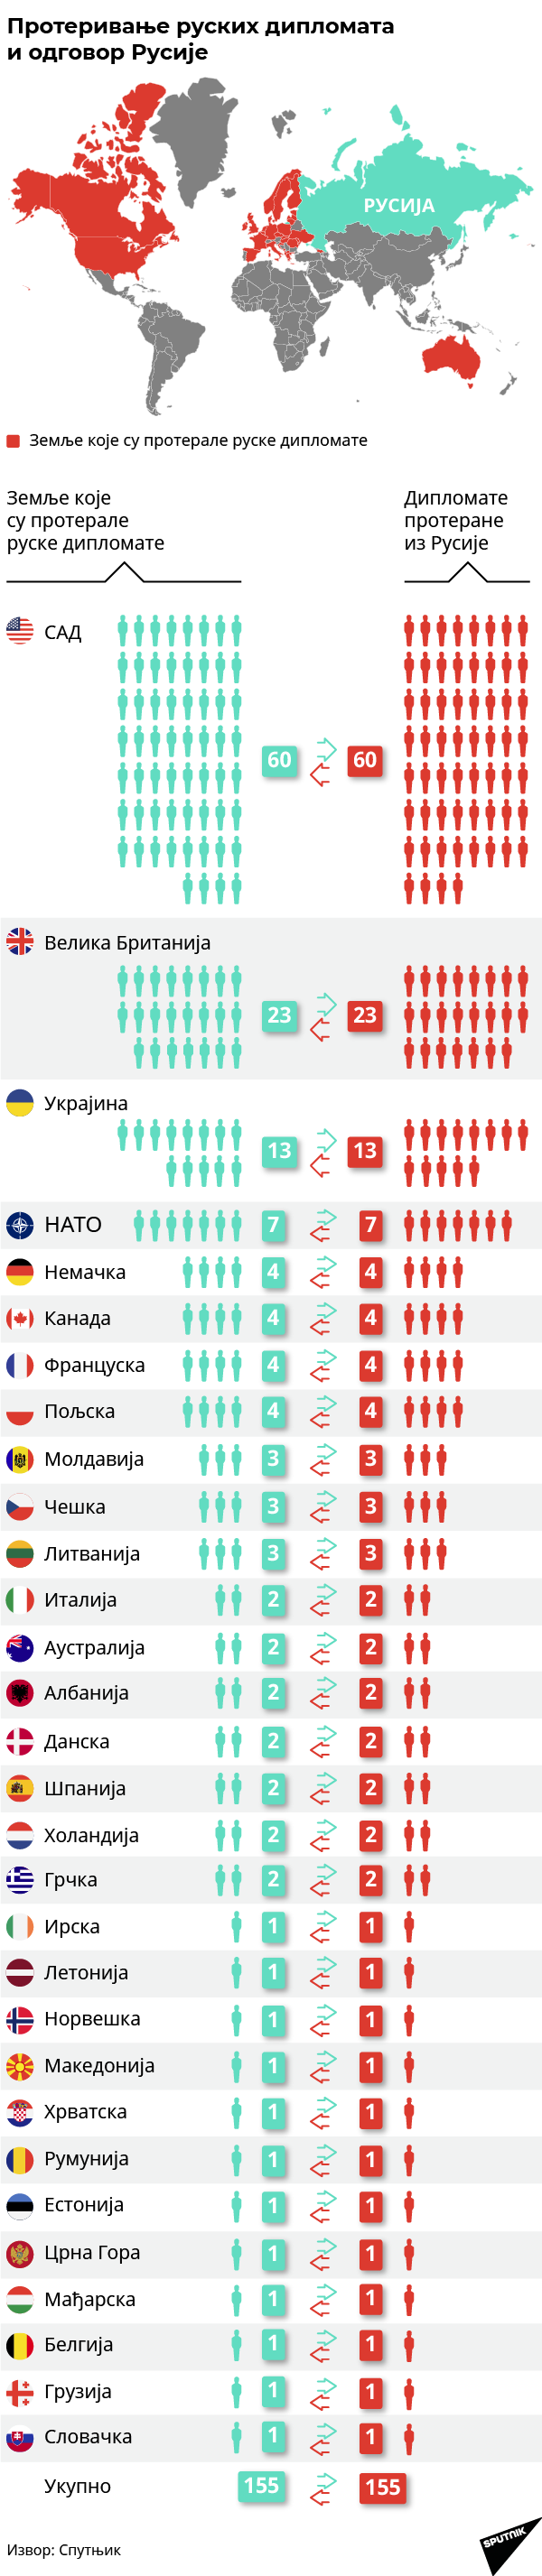 Дипломате инфографика - Sputnik Србија